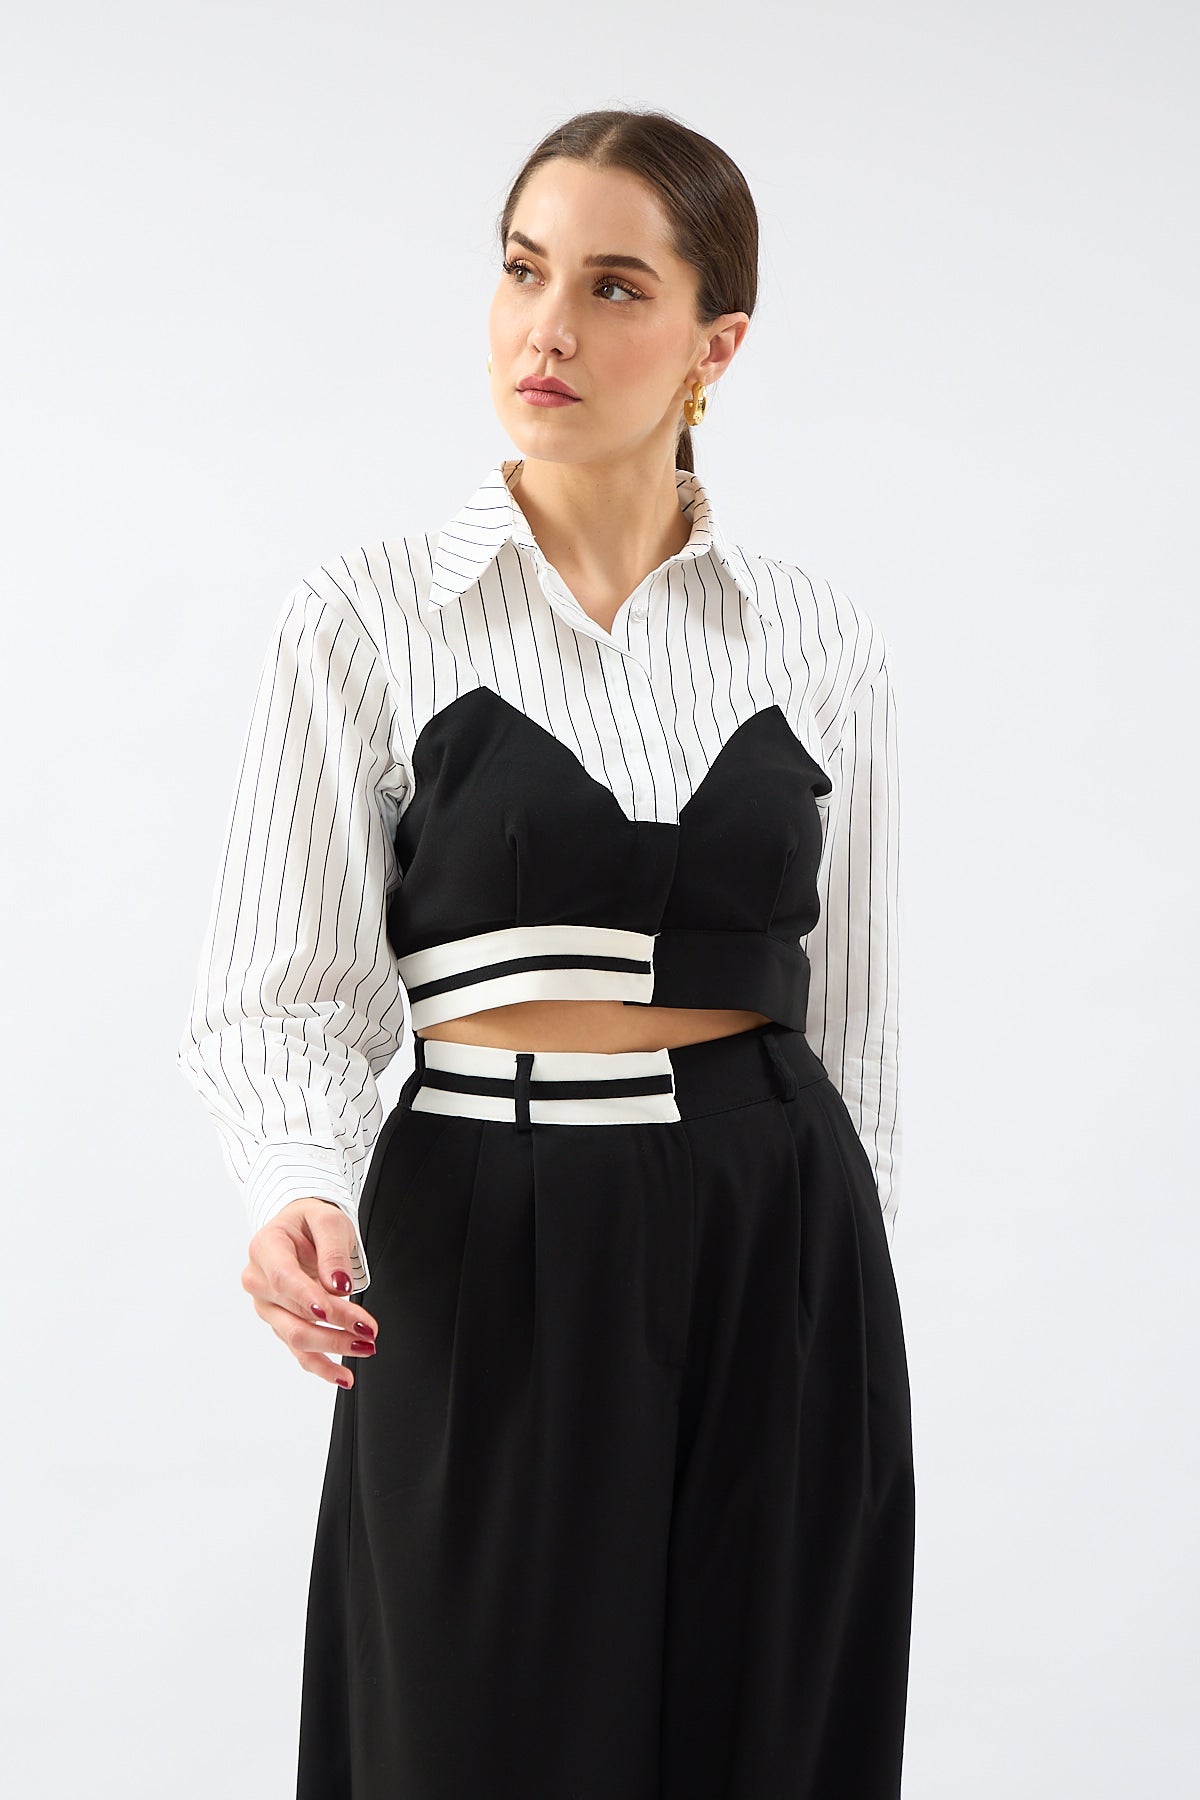 Match Detailed Striped Crop Shirt - Lebbse